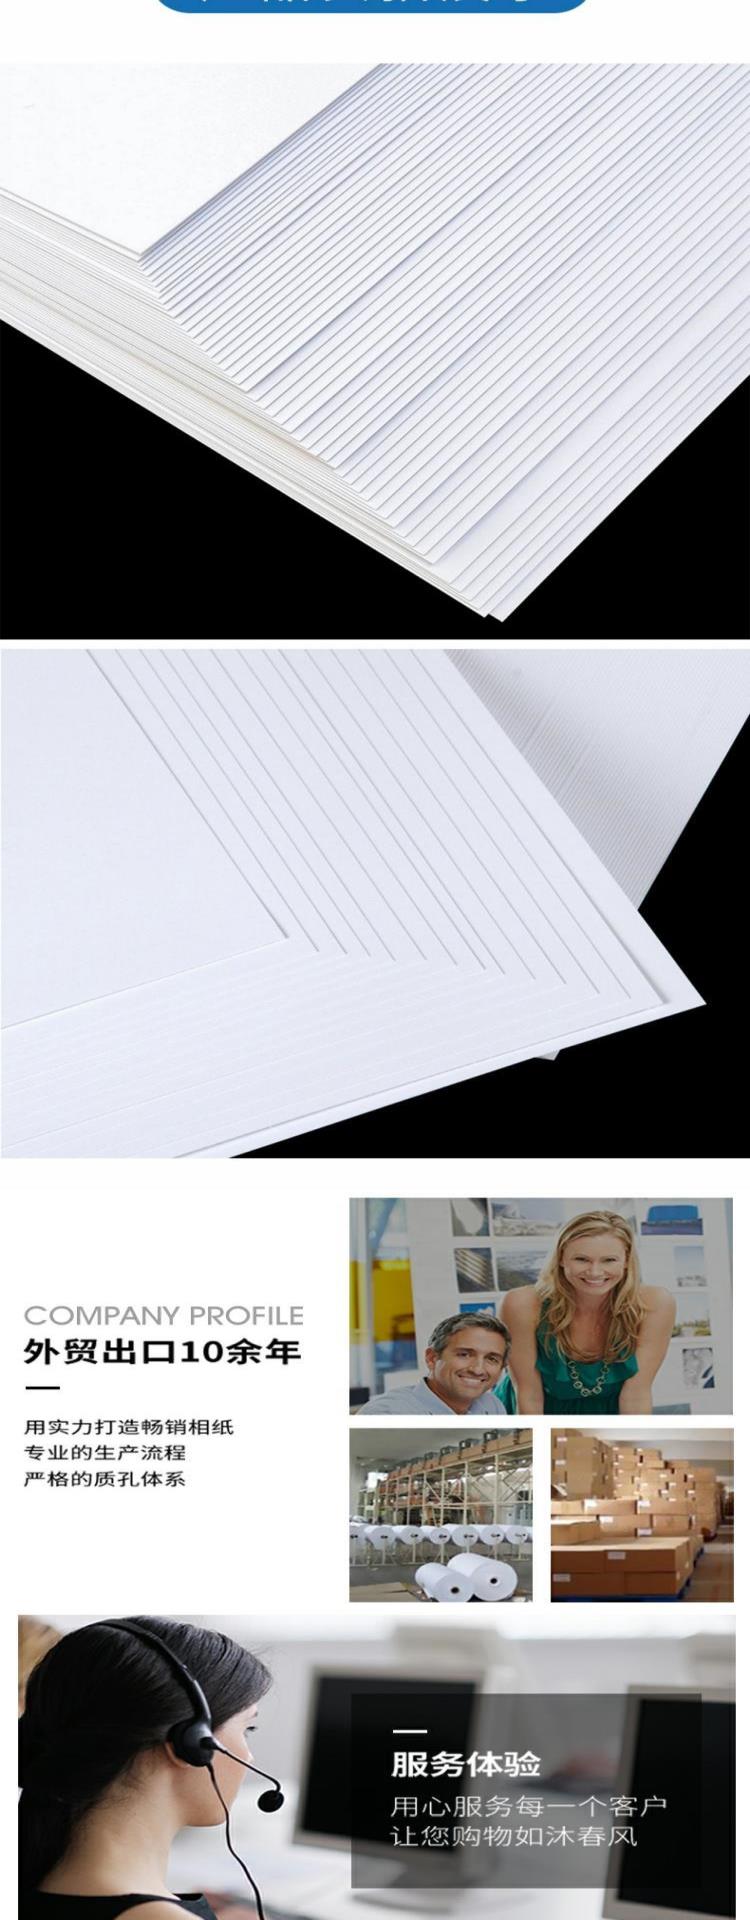 Giấy bìa cứng màu trắng Tự làm giấy thủ công a4 dày bìa cứng bìa giấy danh thiếp giấy trắng tông cứng 180 gram - Giấy văn phòng